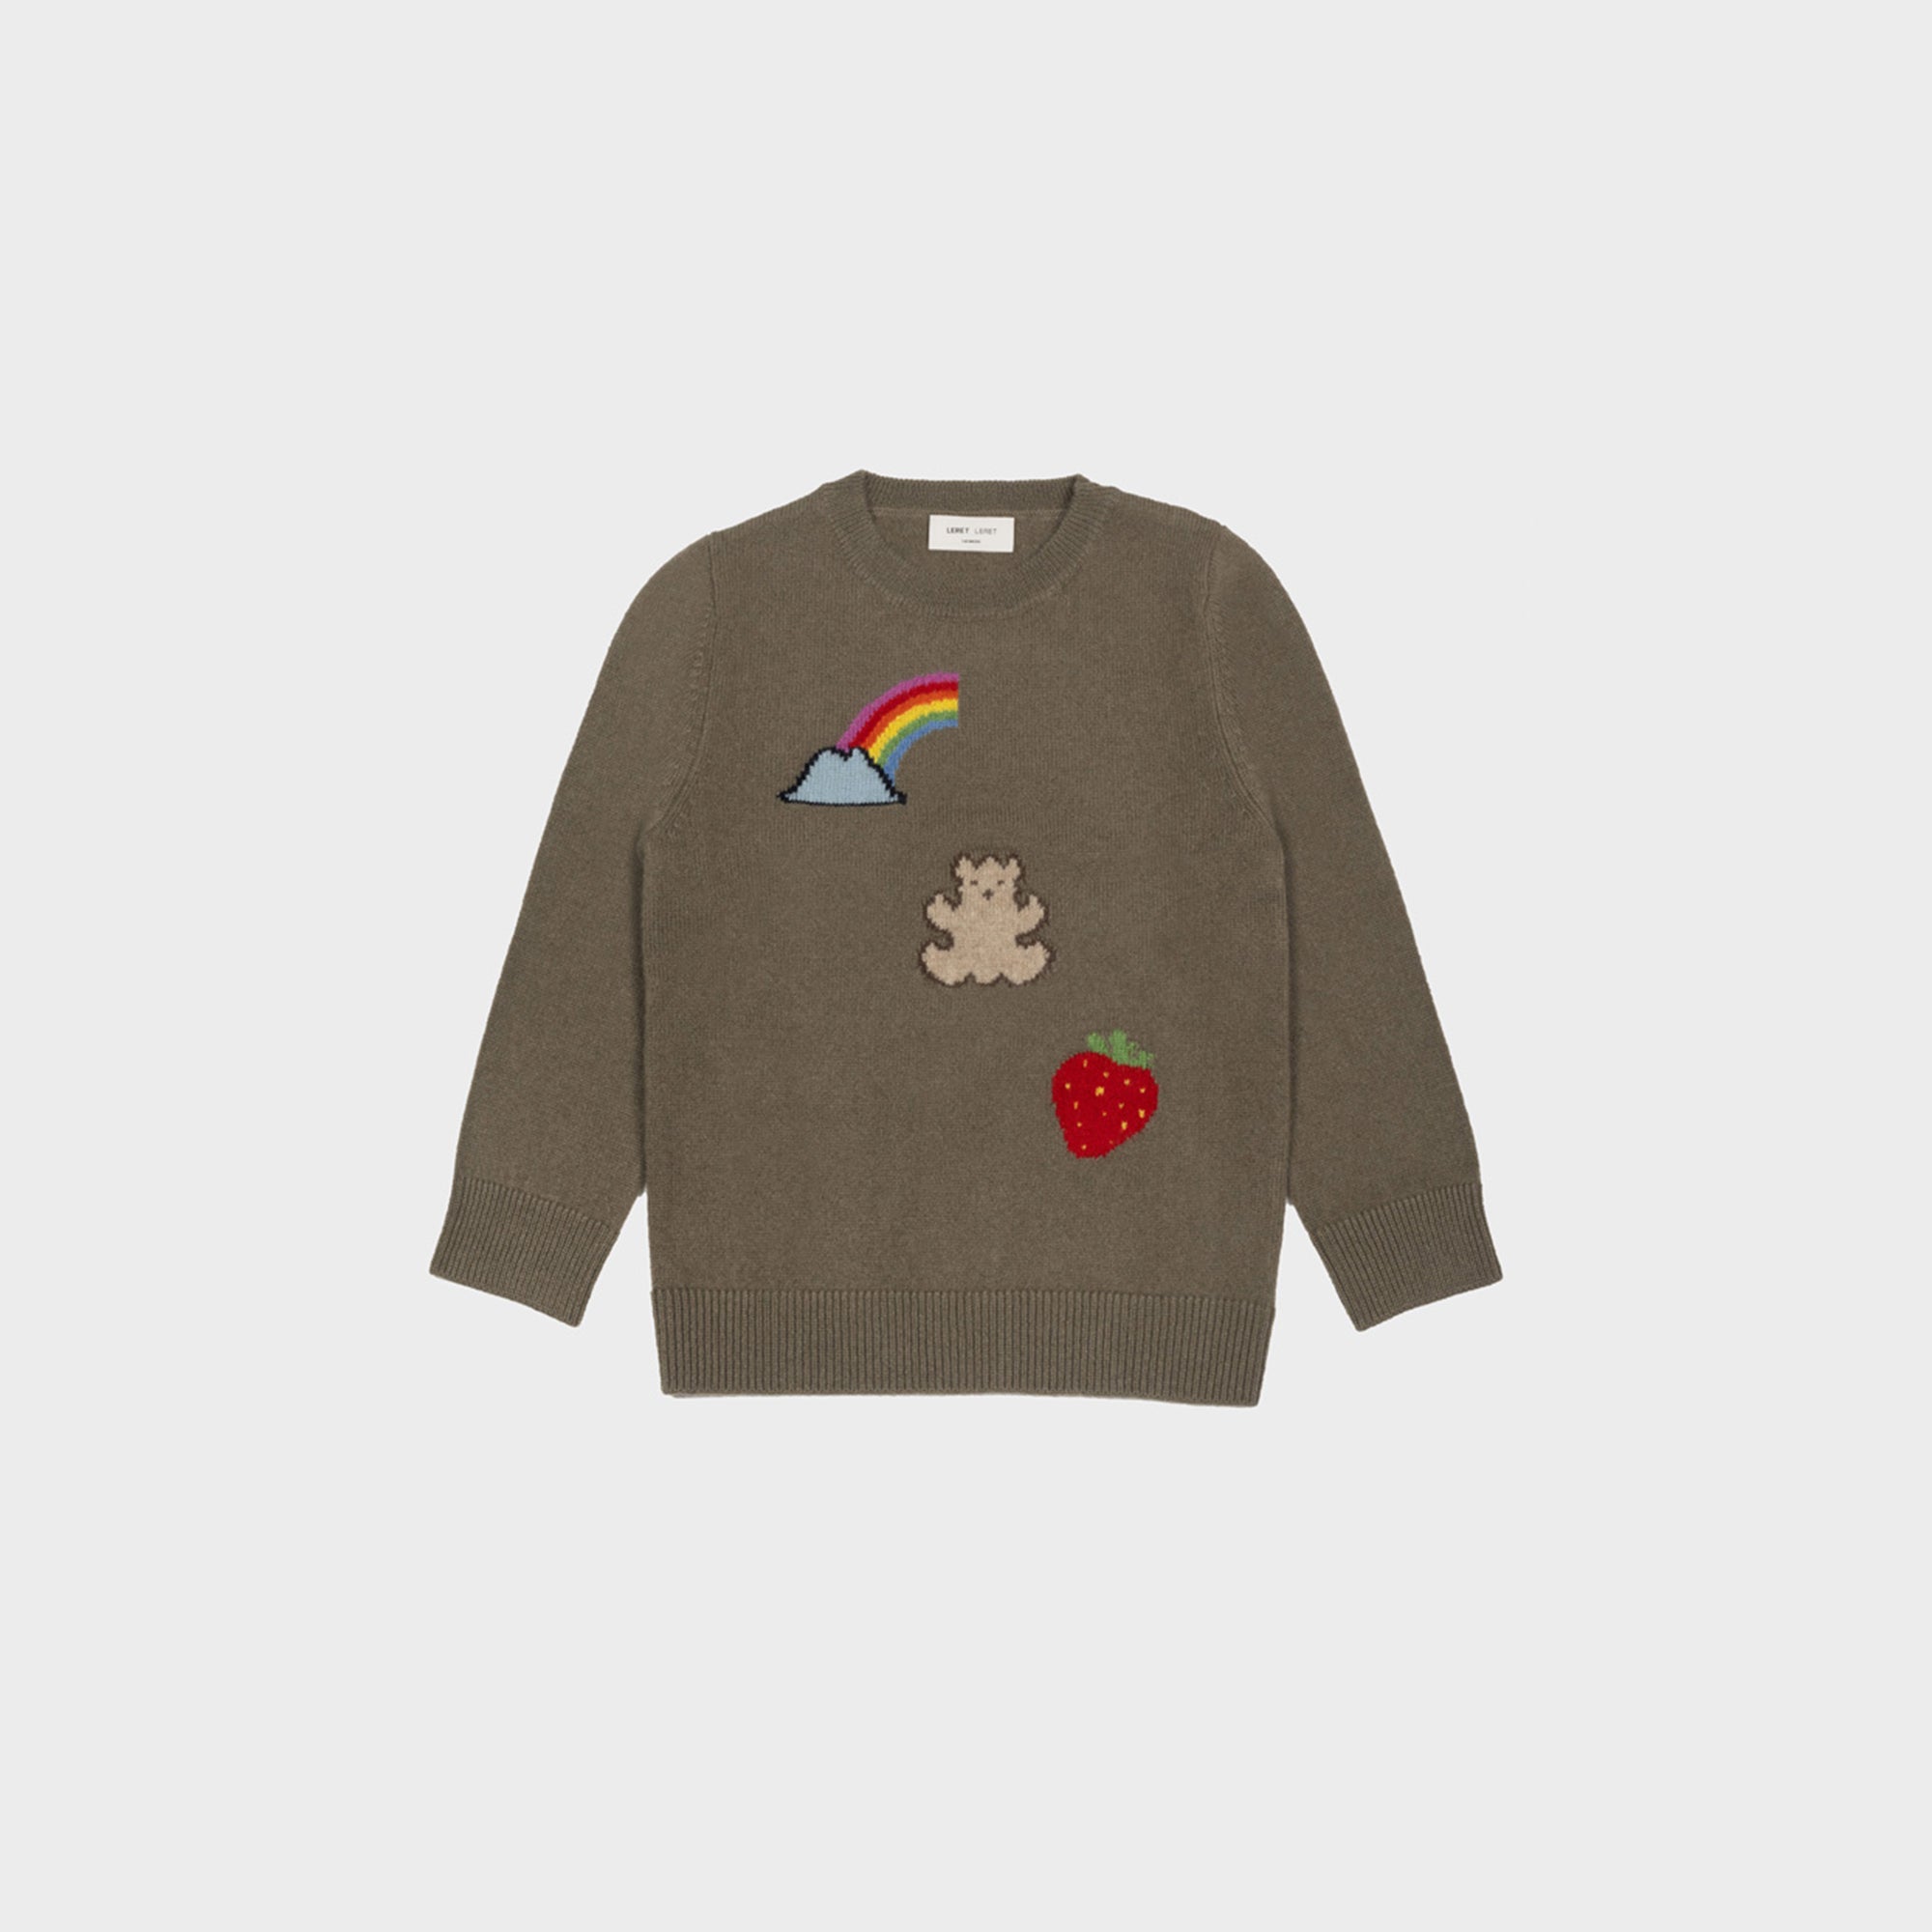 No. 52 Children's Teddybear Sweater